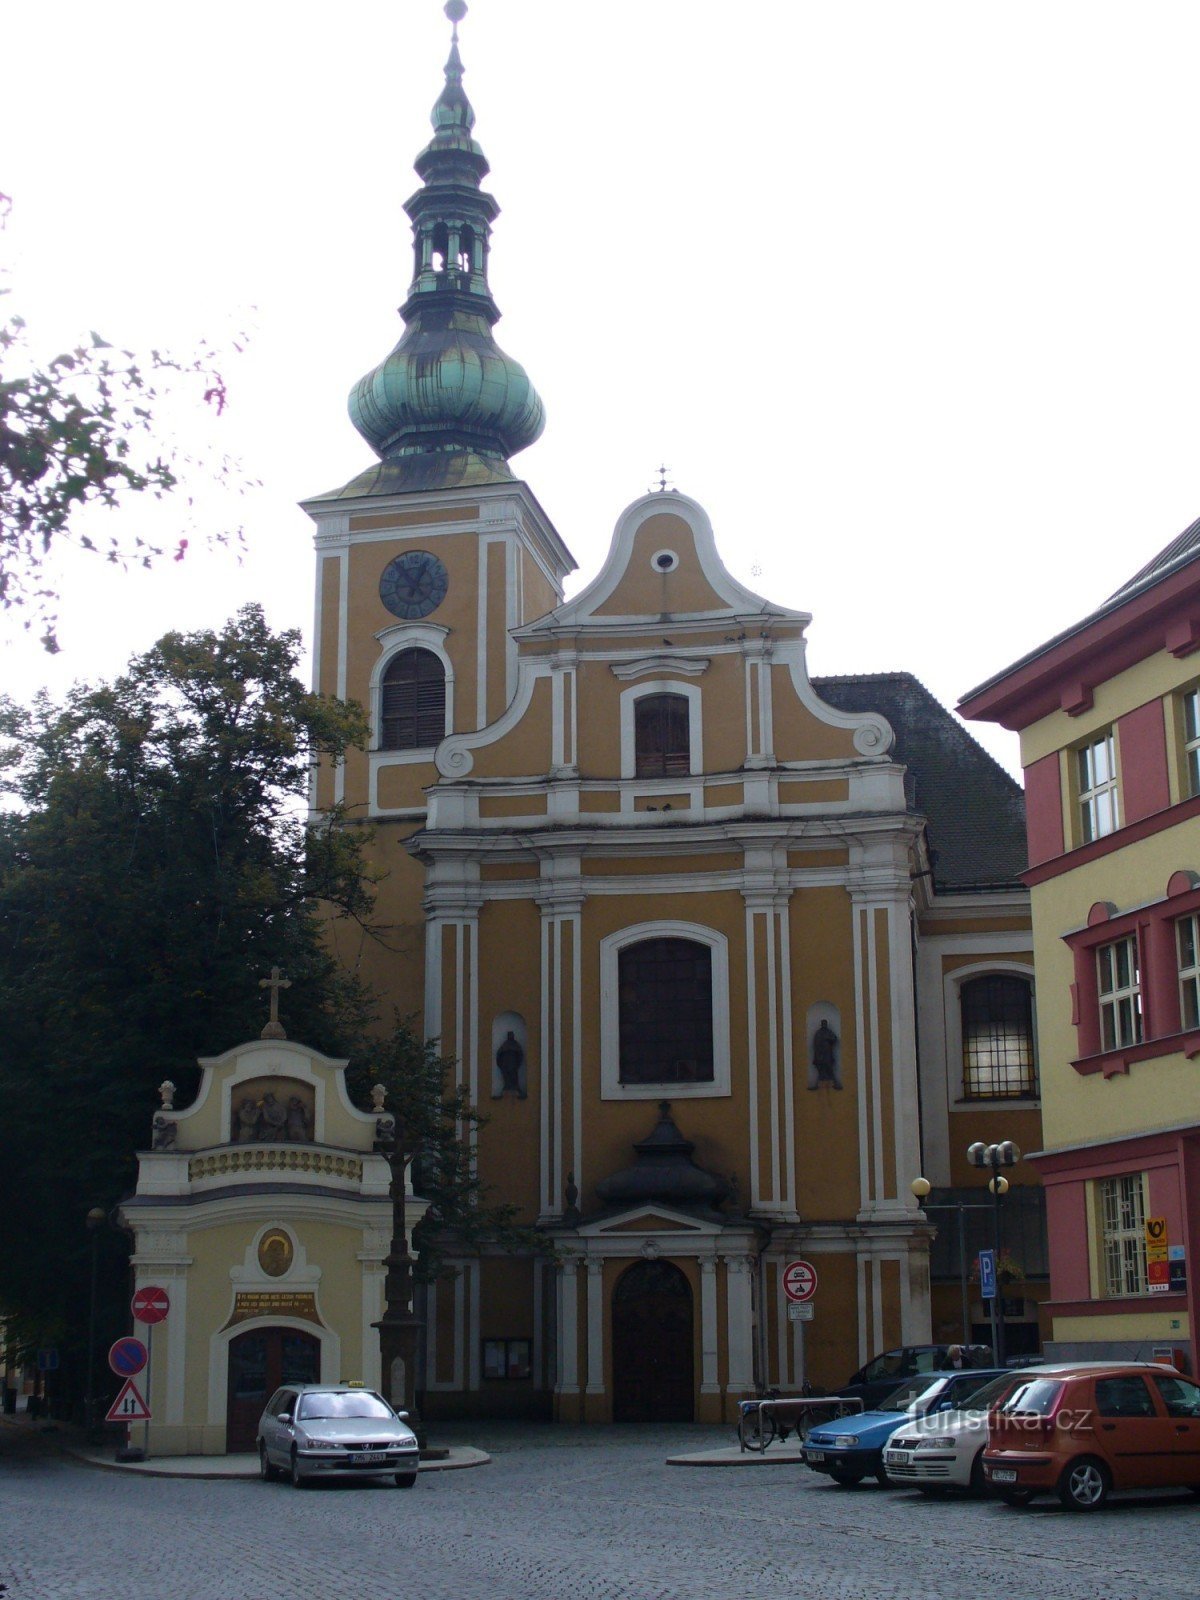 広場の教会